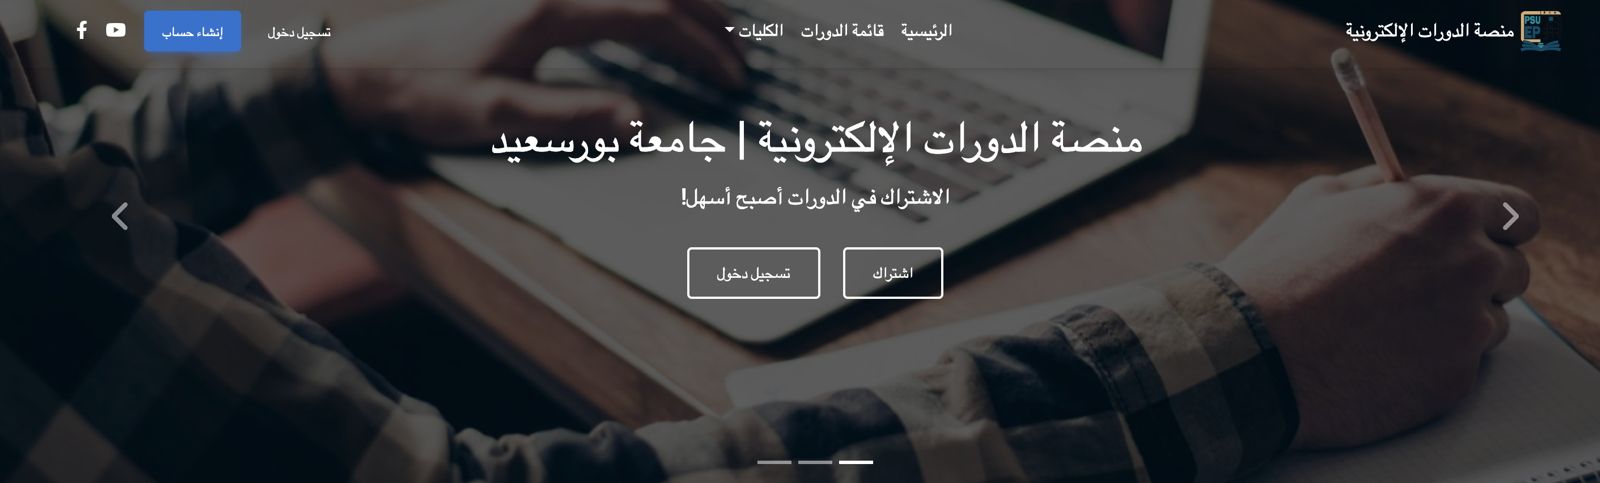 منصة الدورات الإلكترونية بجامعة بورسعيد